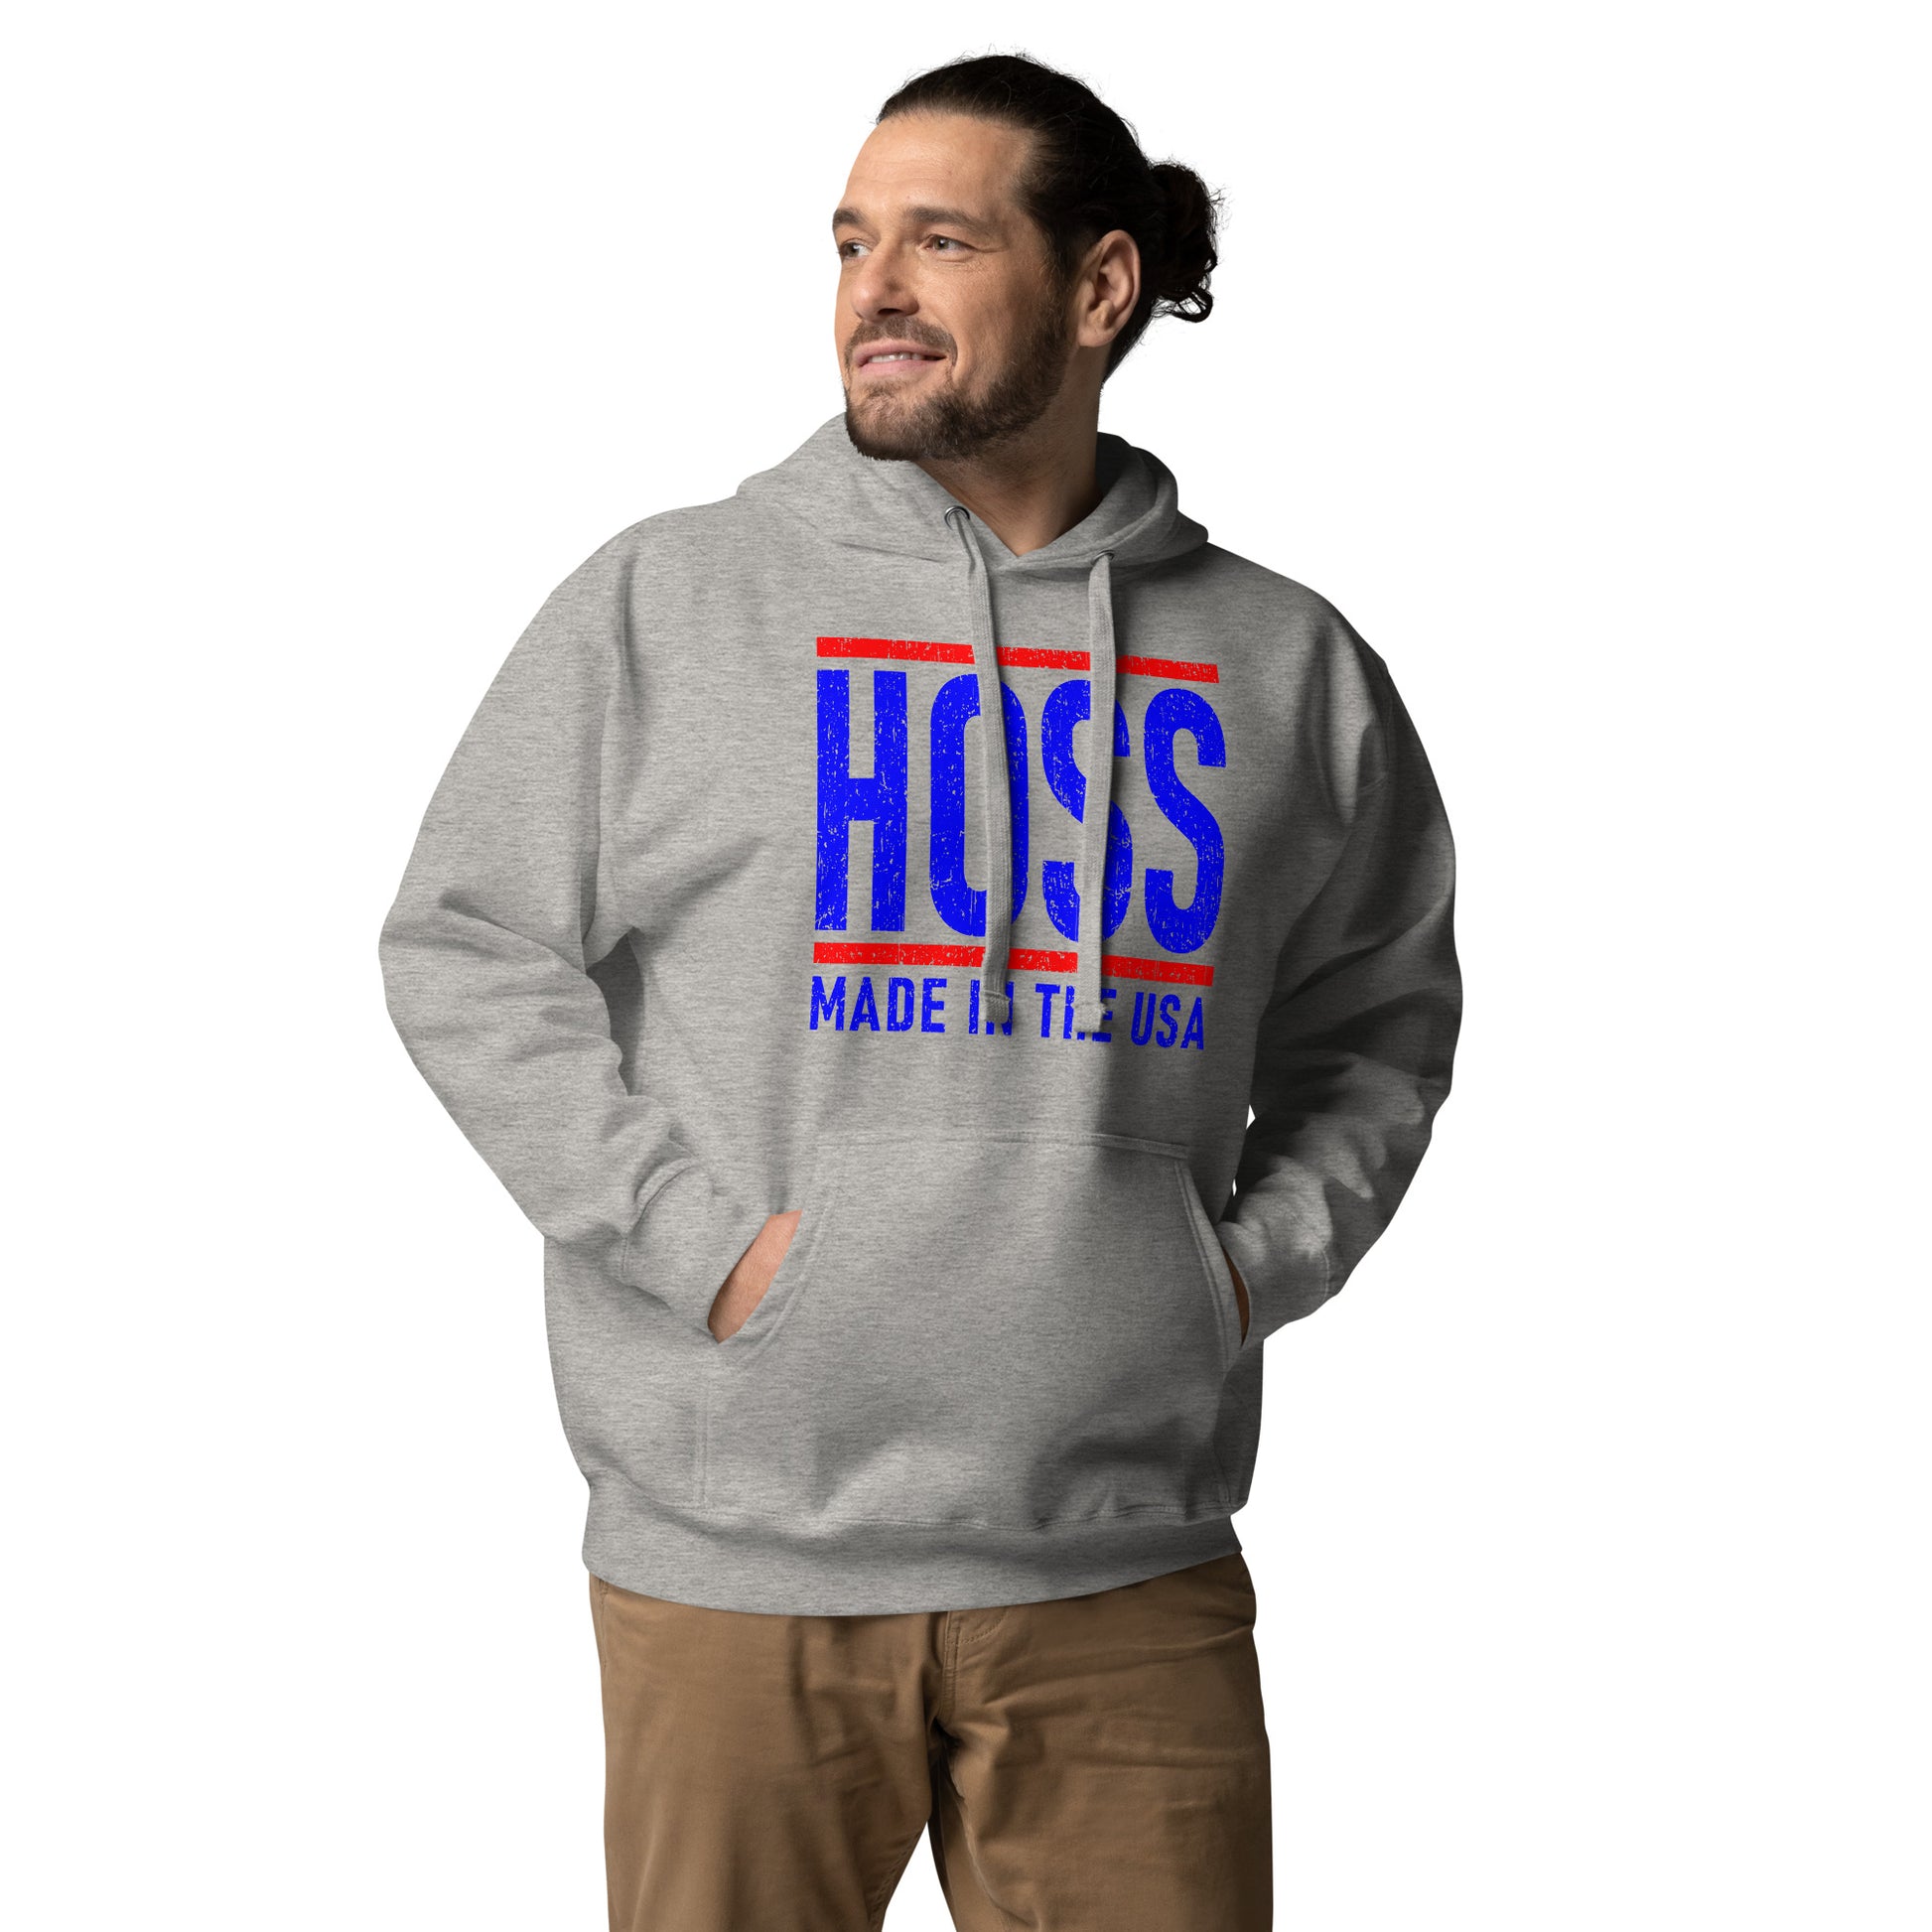 Hoss men's carbon grey hoodie sweater